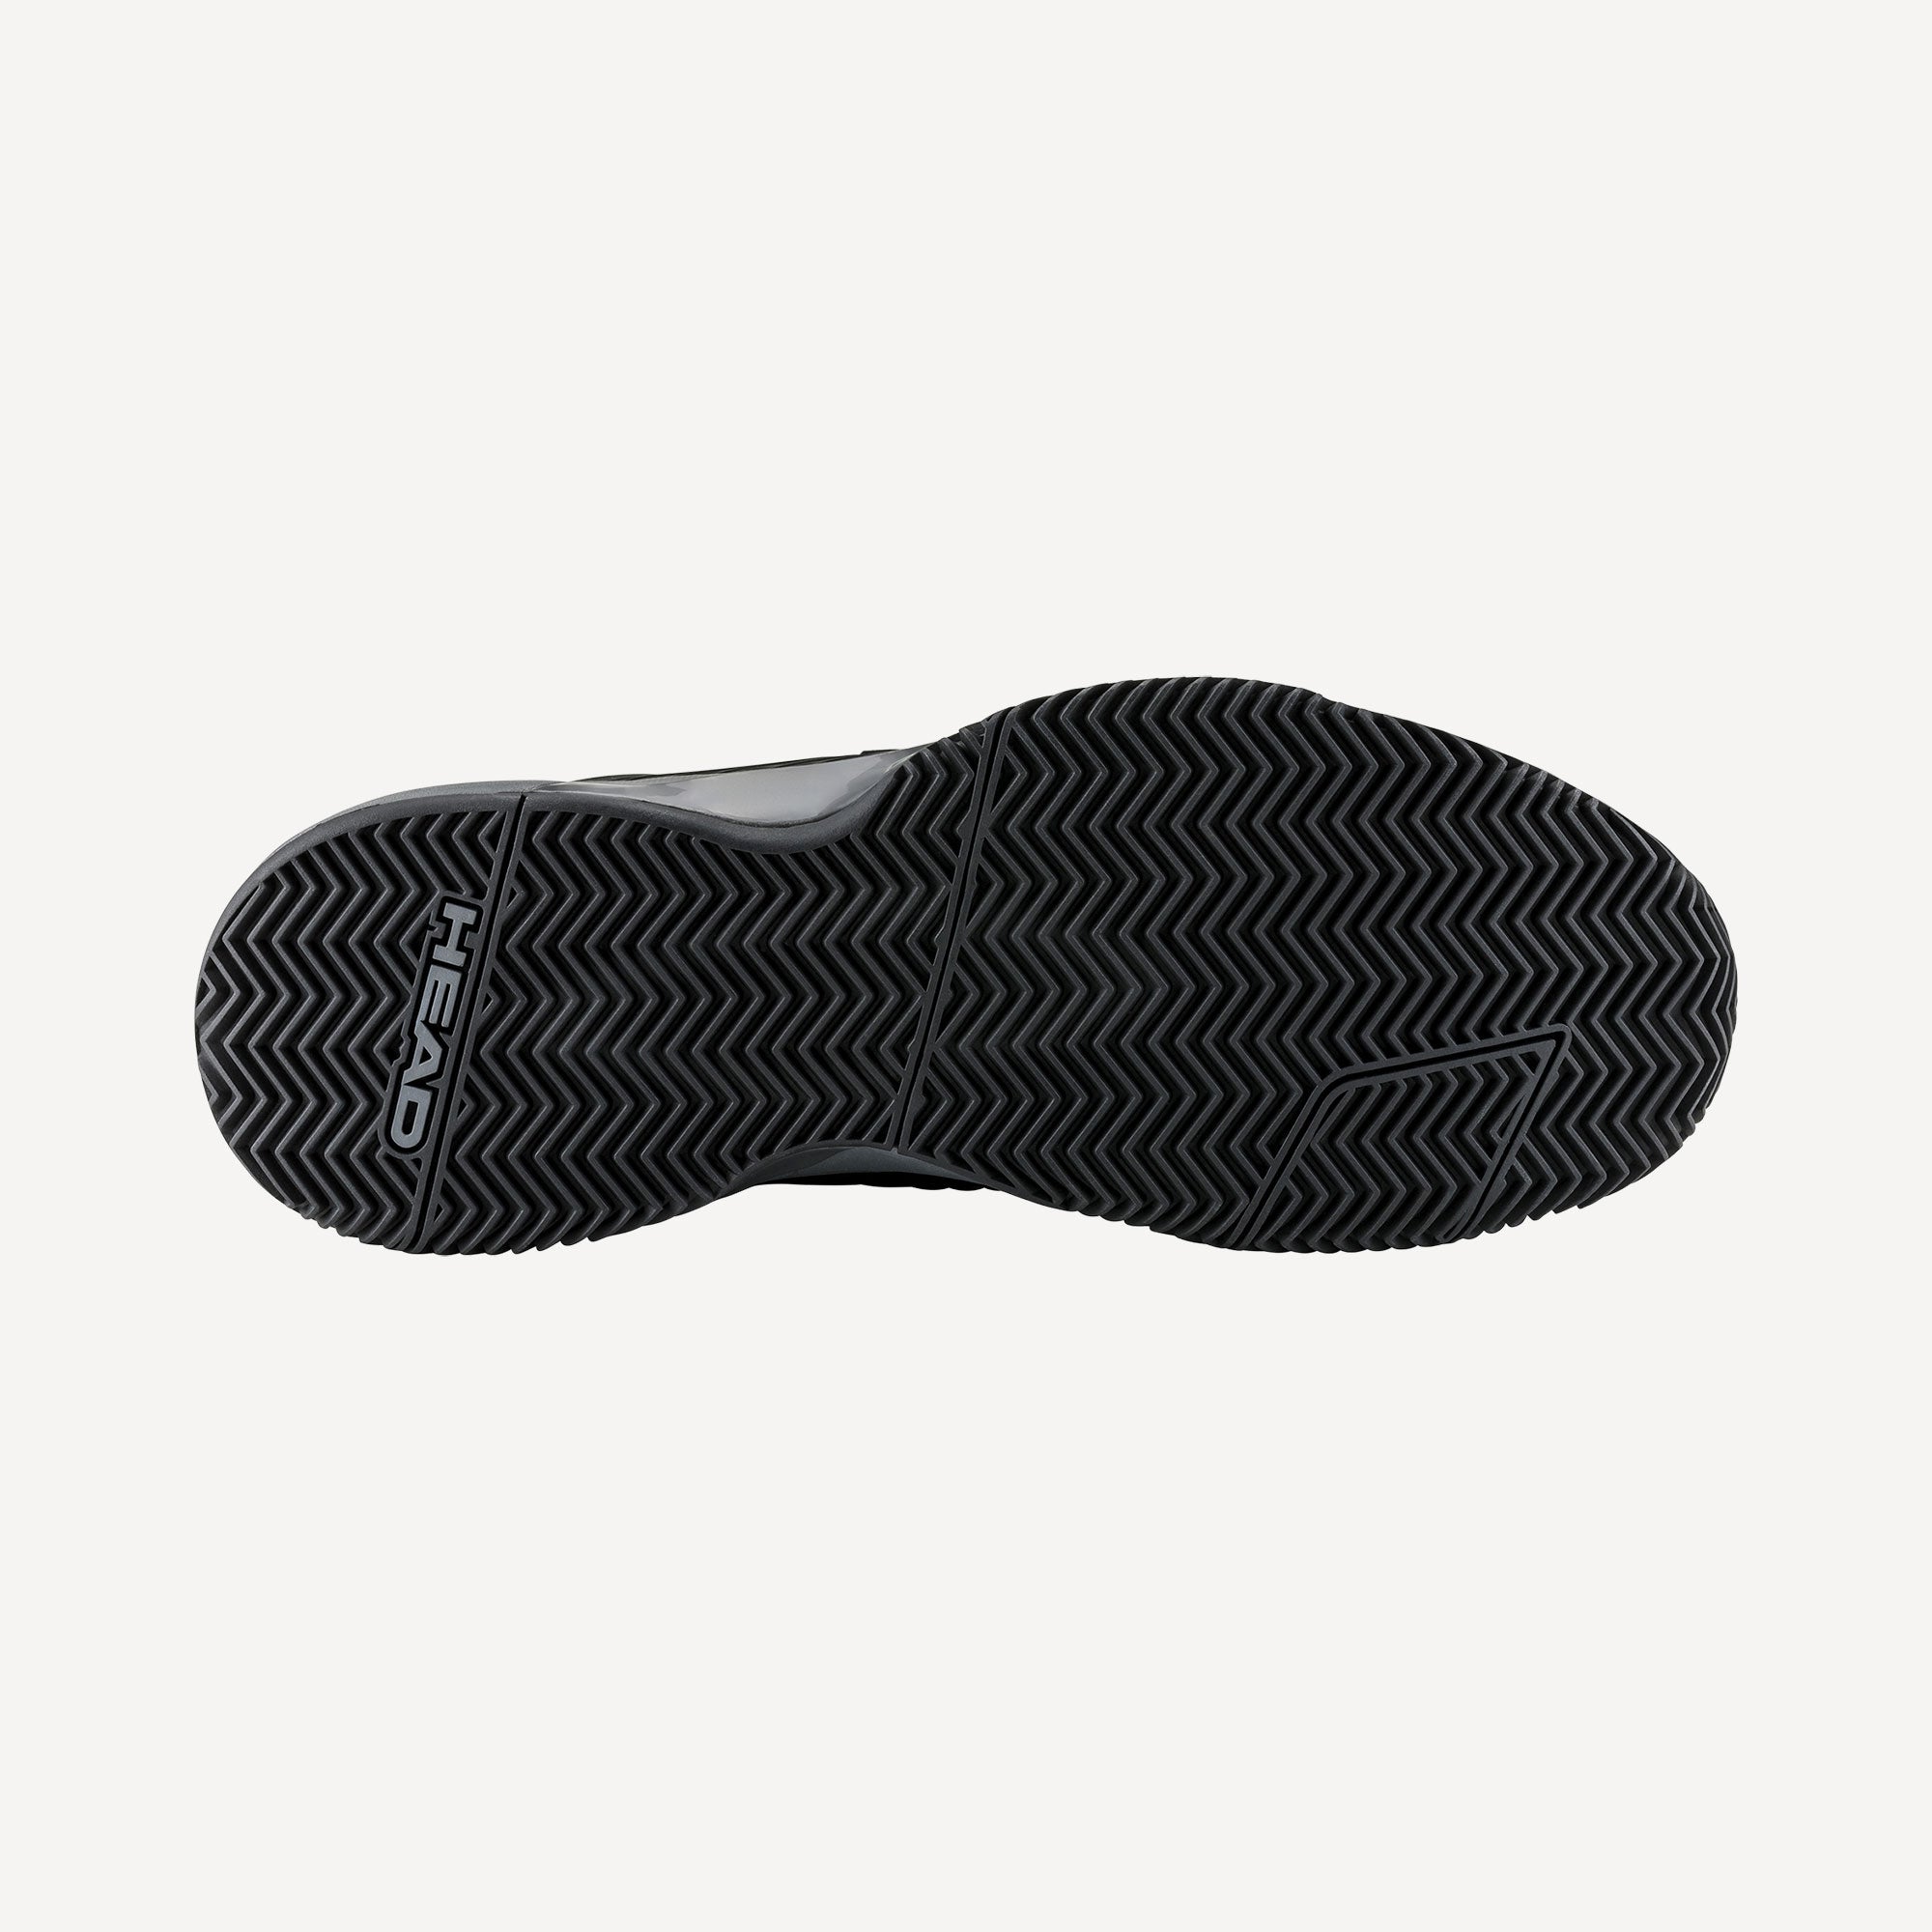 HEAD Revolt Pro 4.5 Men's Clay Court Tennis Shoes - Black (2)